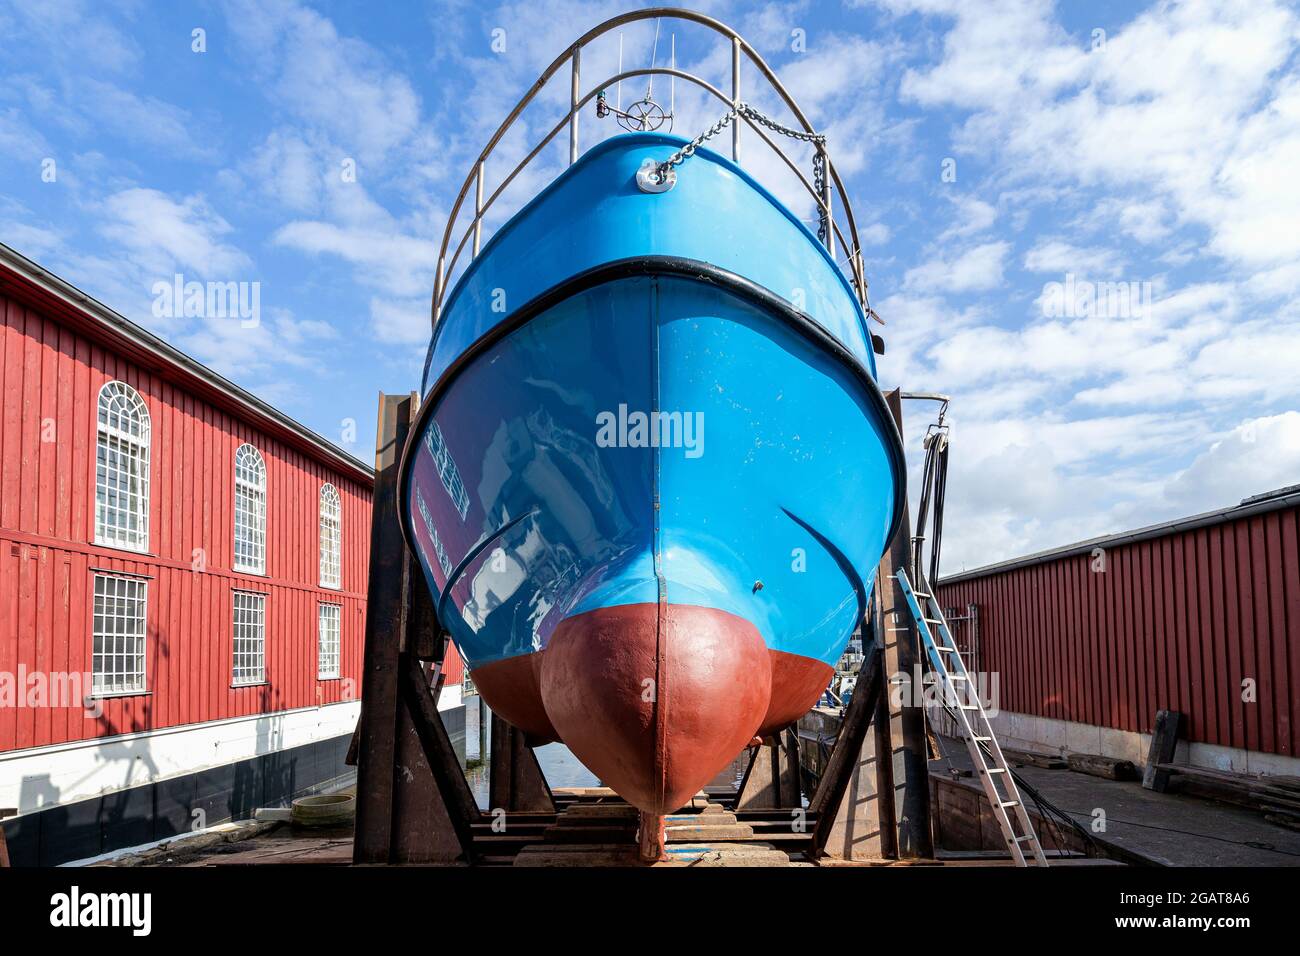 Fischereifahrzeug in Schiffswerft für Wartung Stockfoto